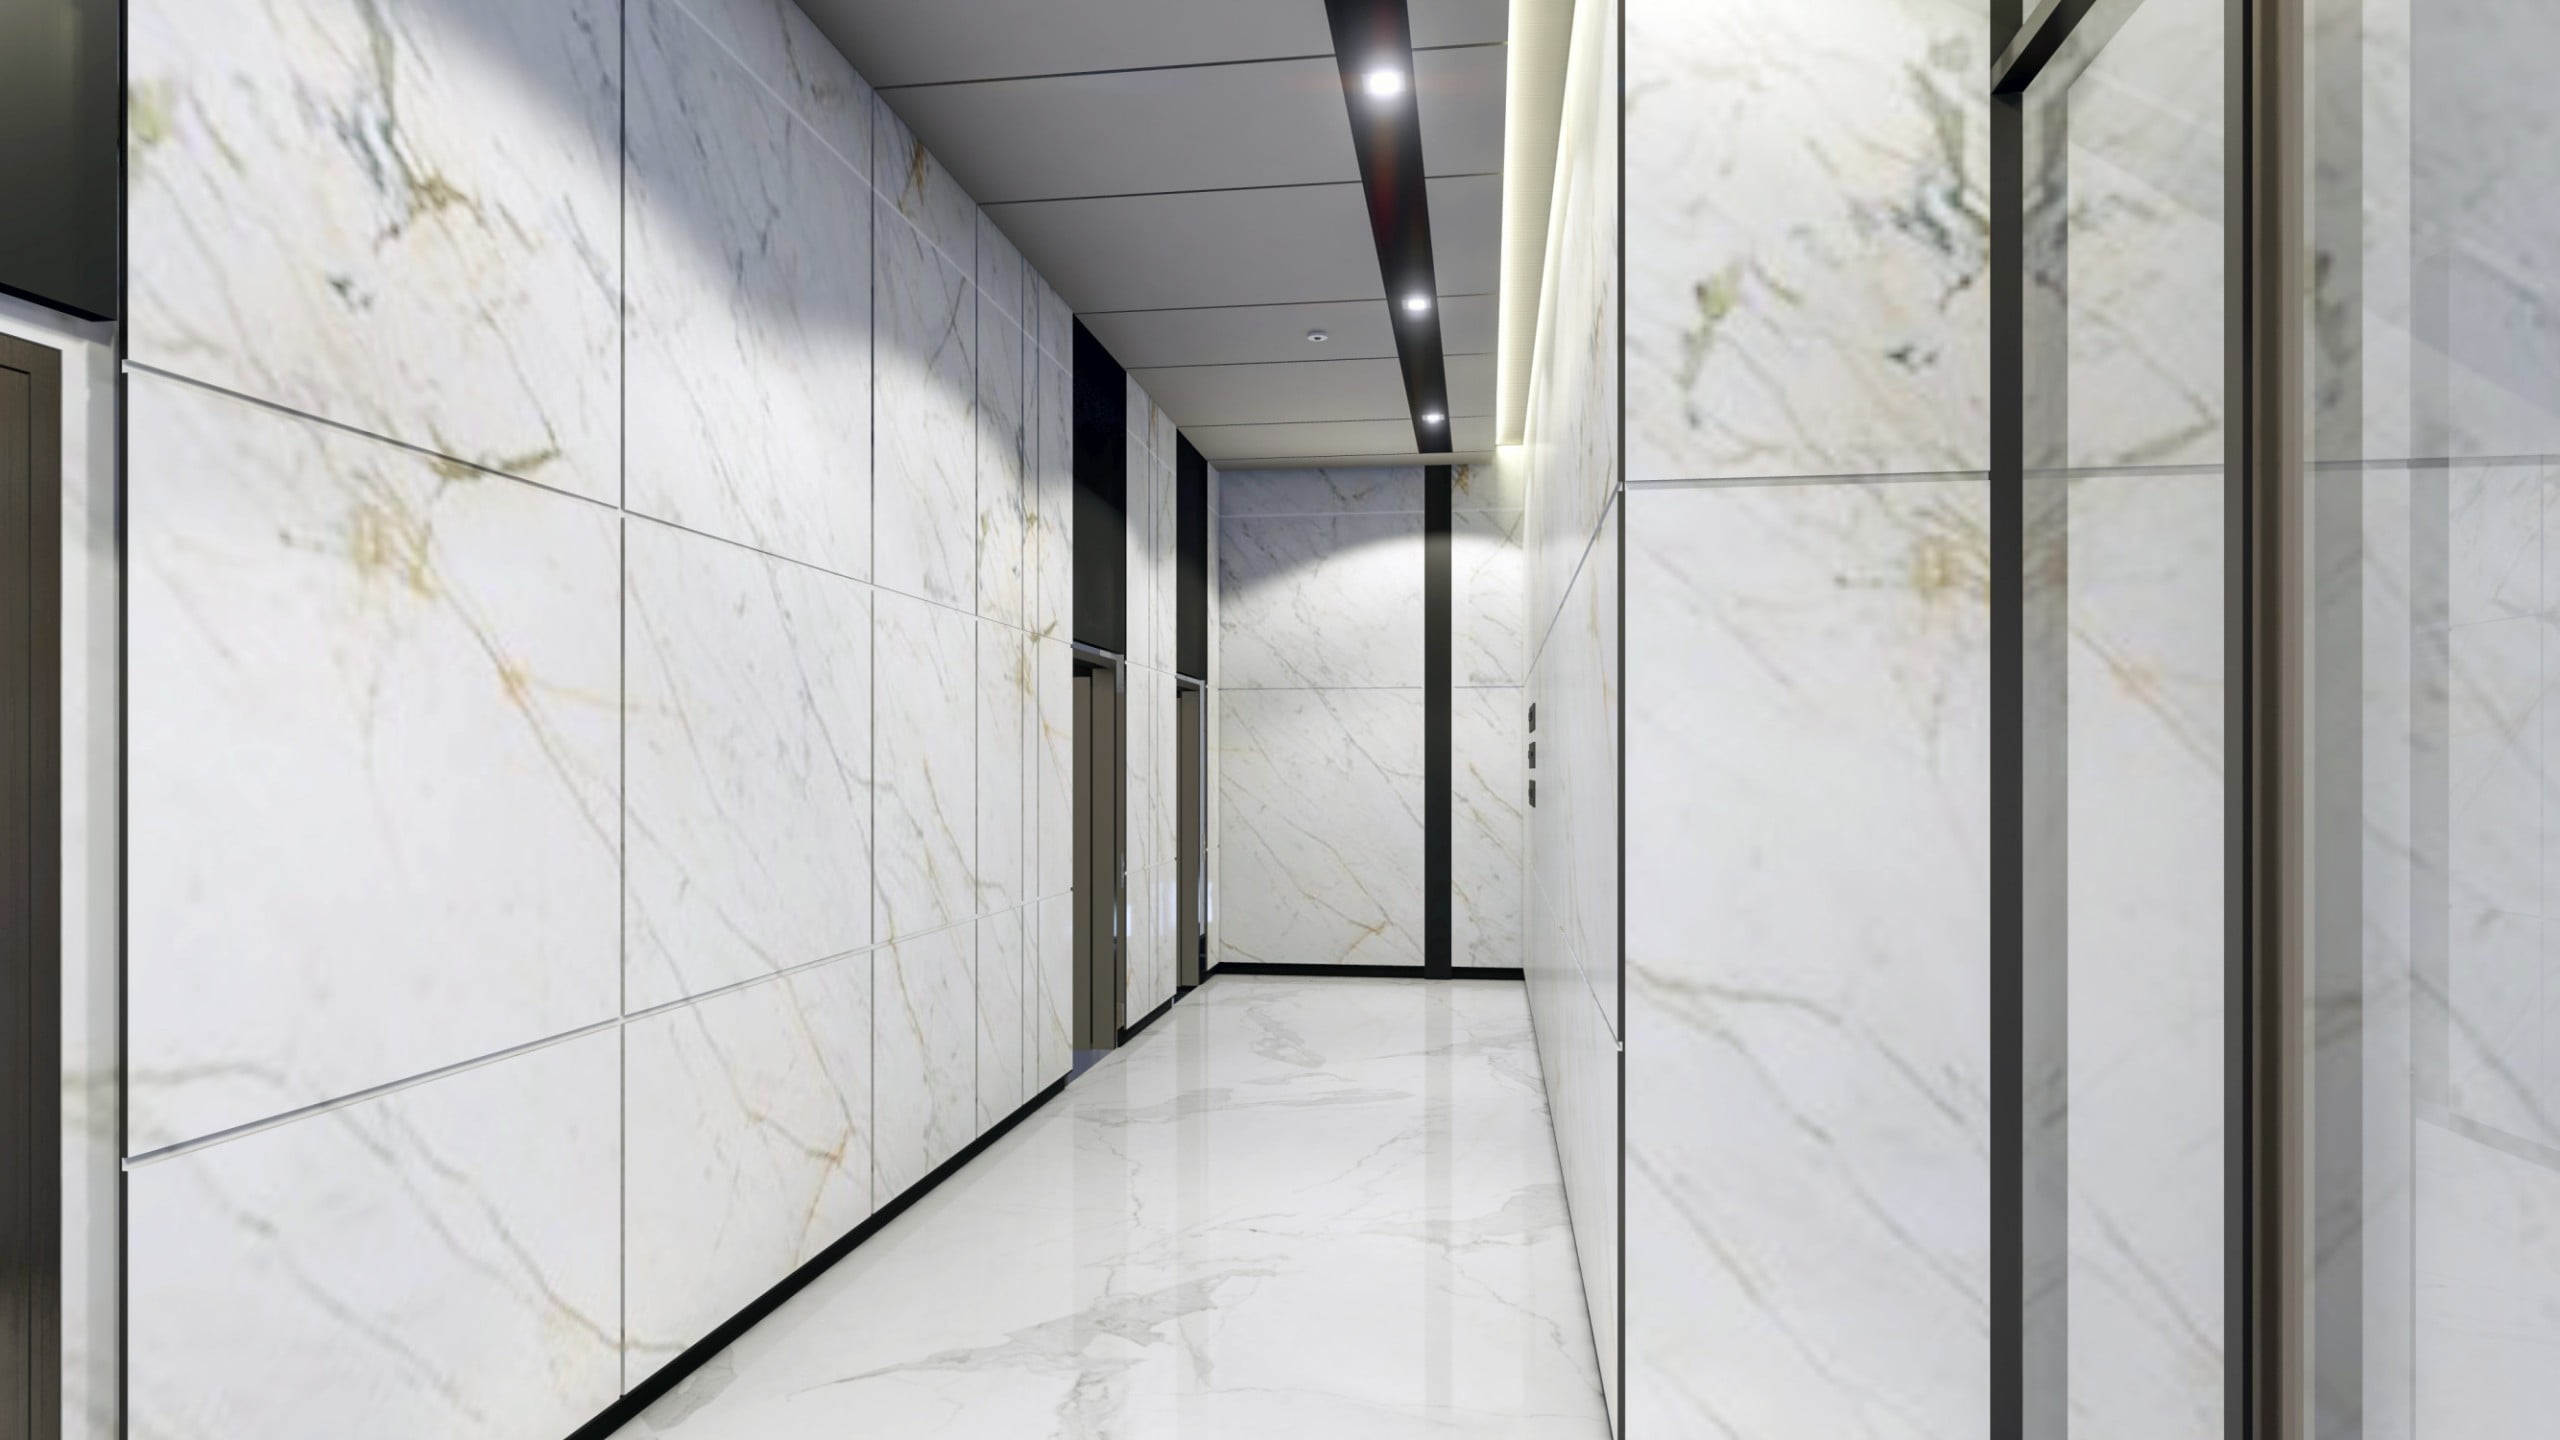 GROUND FLOOR OFFICE LIFT LOBBY scaled - Immobilier Dubai